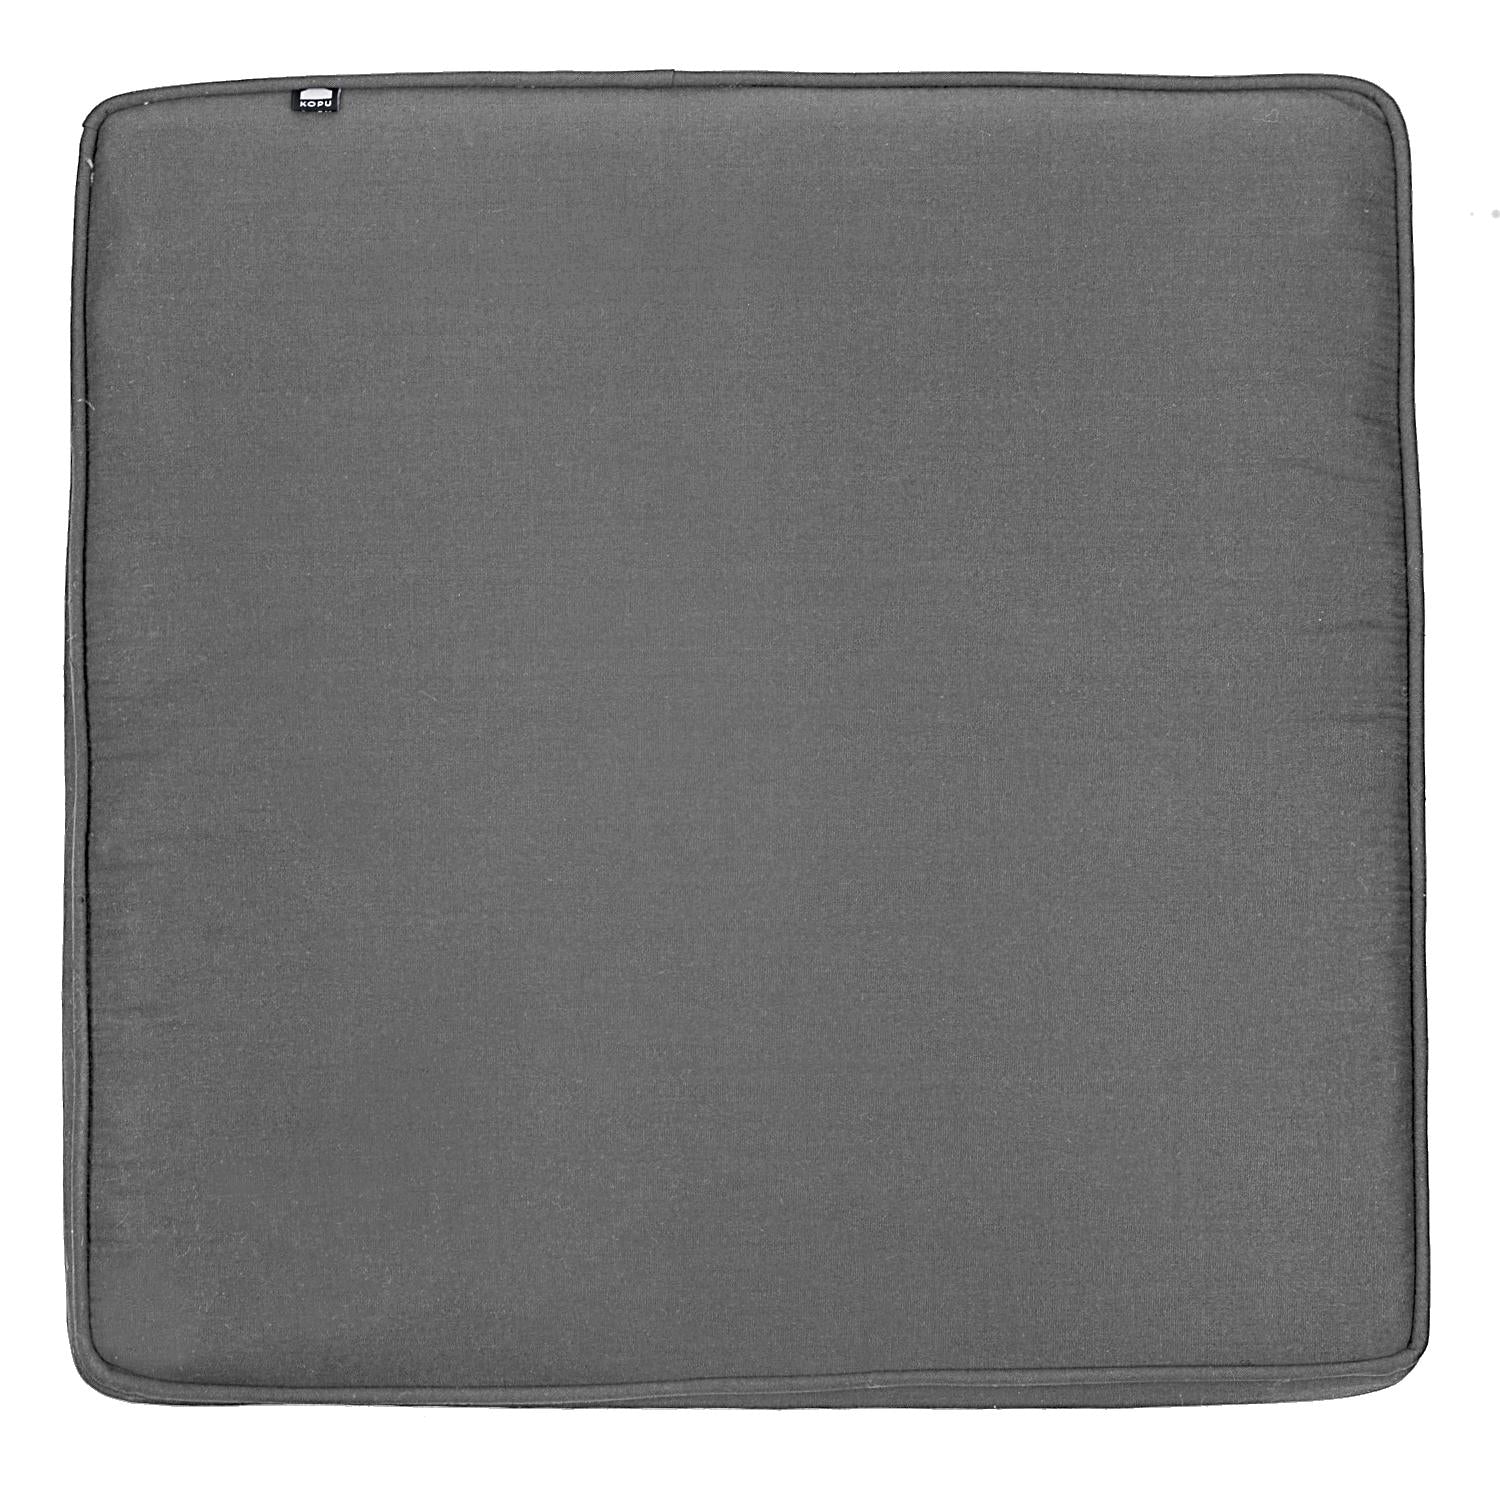 Kopu®  Prisma Mouse Grey Loungekussen Zit gedeelte 60x60 cm - Grijs